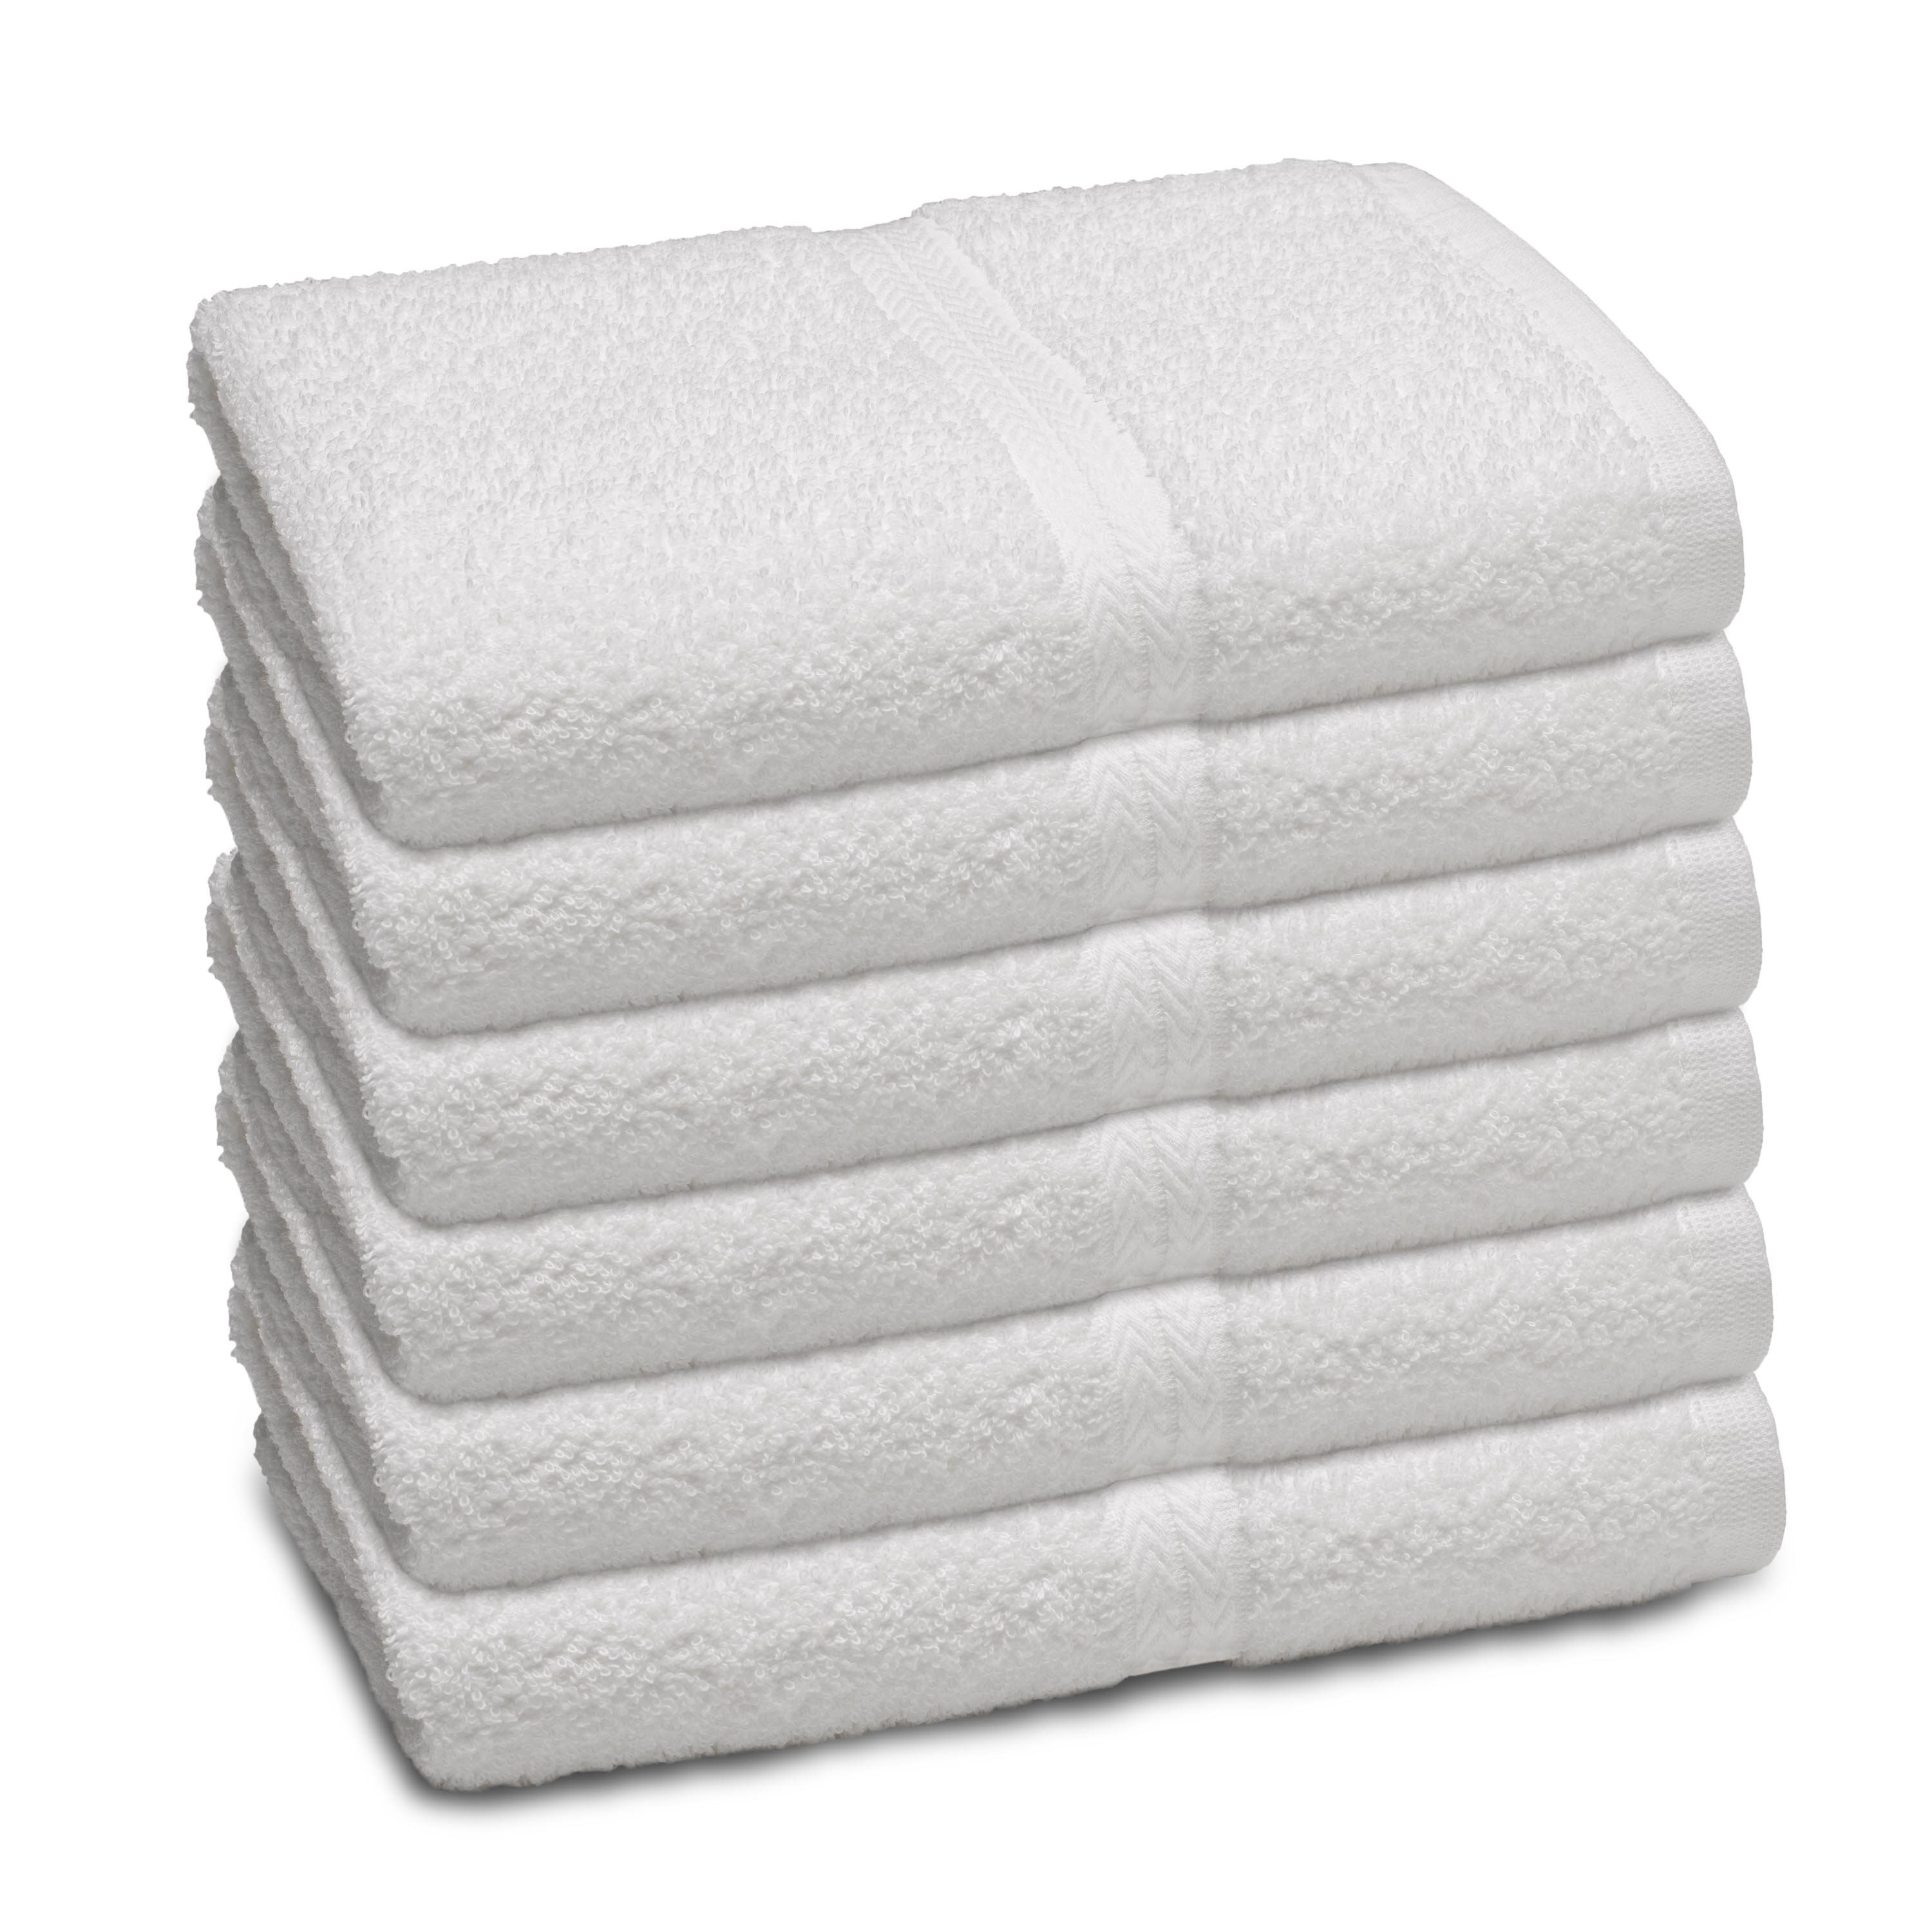 Basic 6 Piece 100% Cotton Towel Set